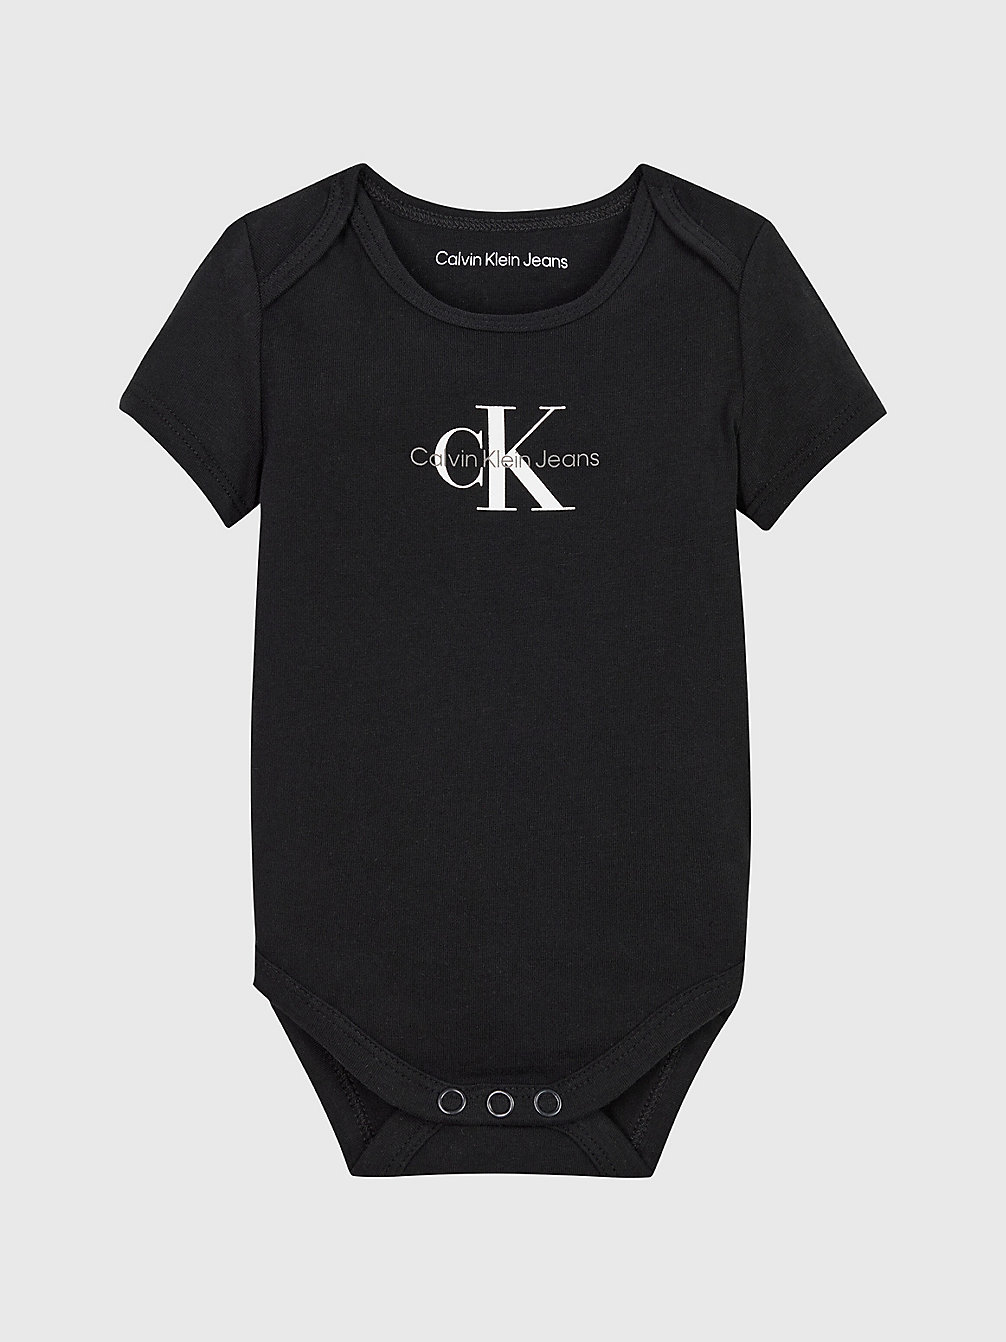 CK BLACK > Body Dla Noworodka Z Logo > undefined newborn - Calvin Klein